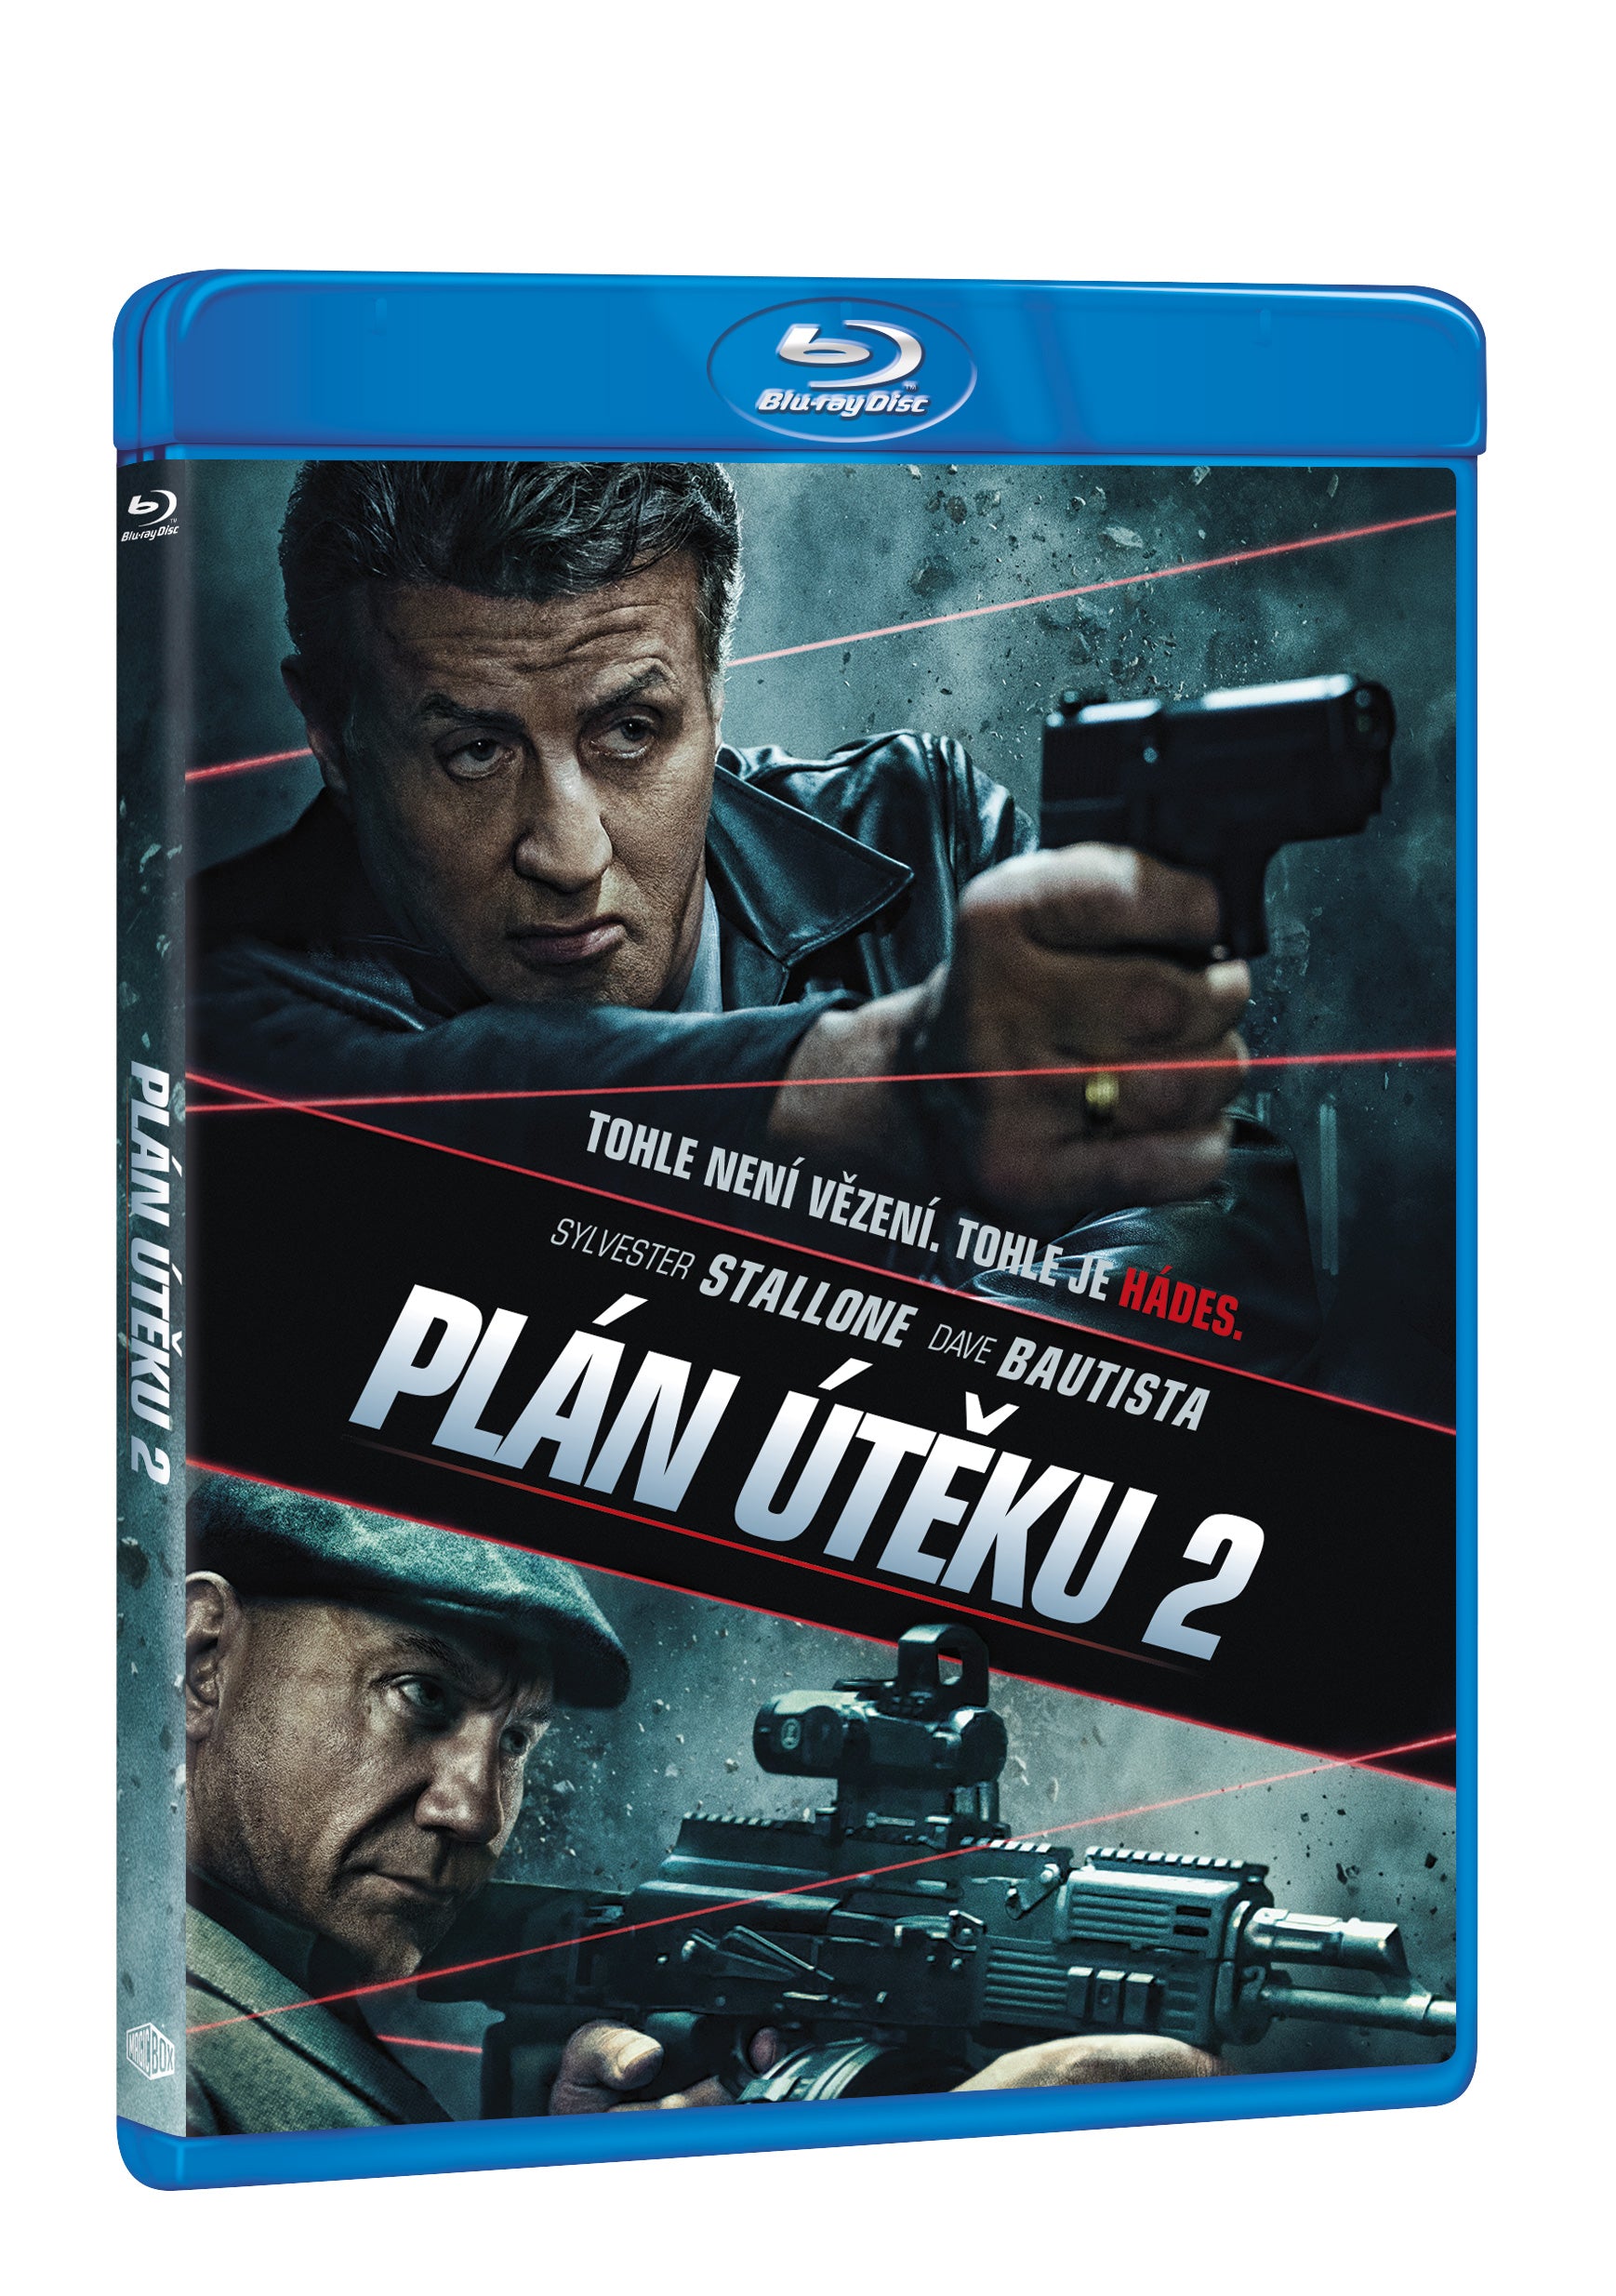 Plan uteku 2 BD / Escape Plan 2: Hades - Czech version